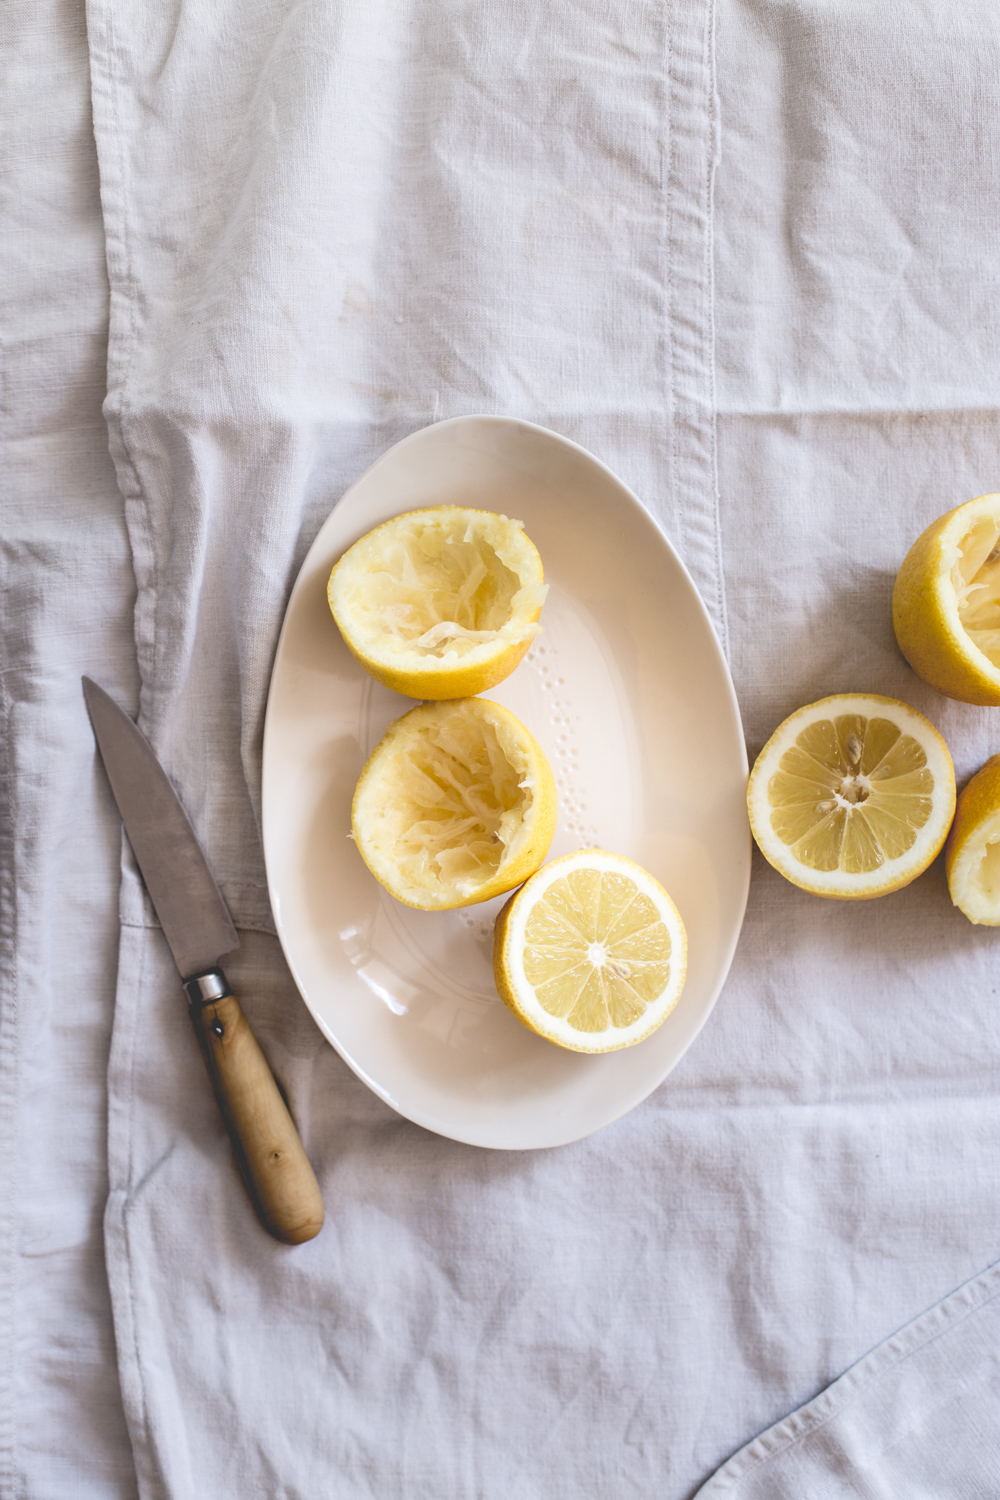 tarte au citron meringuée